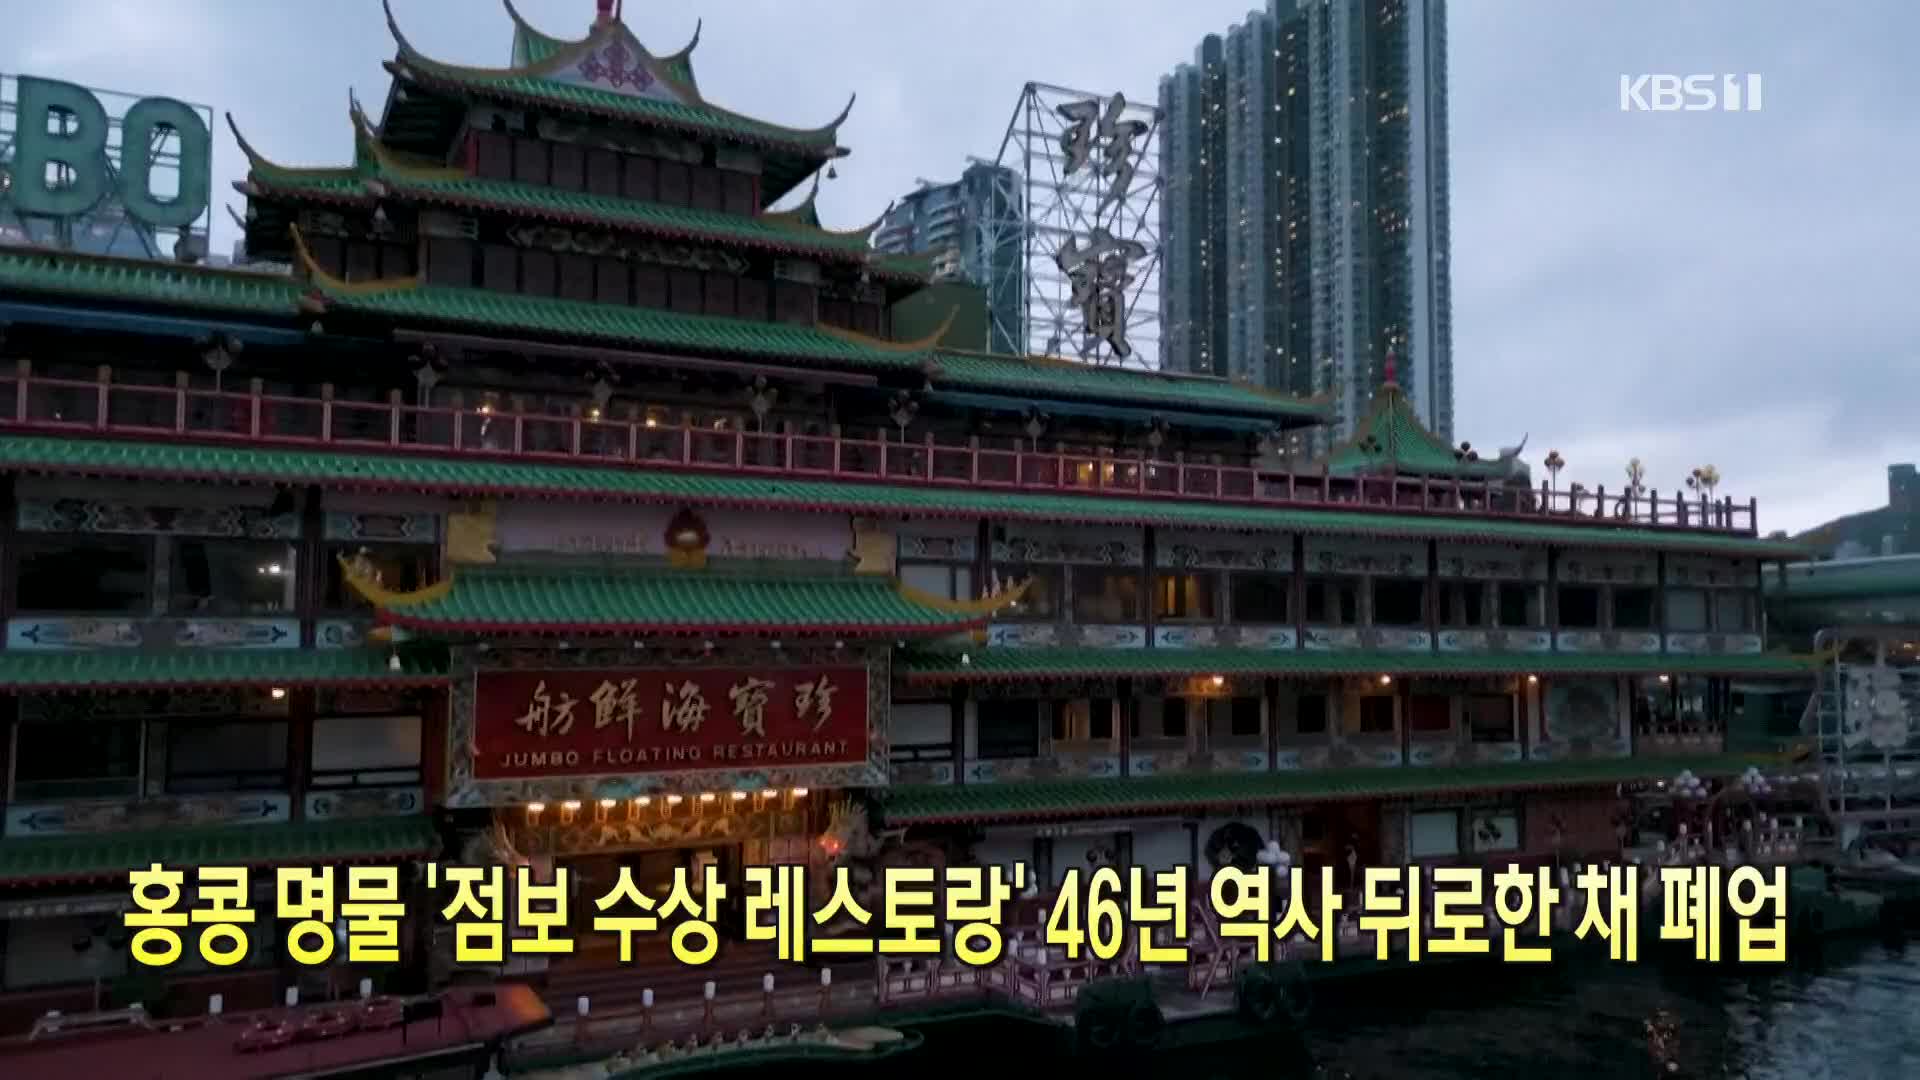 [톡톡 지구촌] 홍콩 명물 ‘점보 수상 레스토랑’ 46년 역사 뒤로한 채 폐업